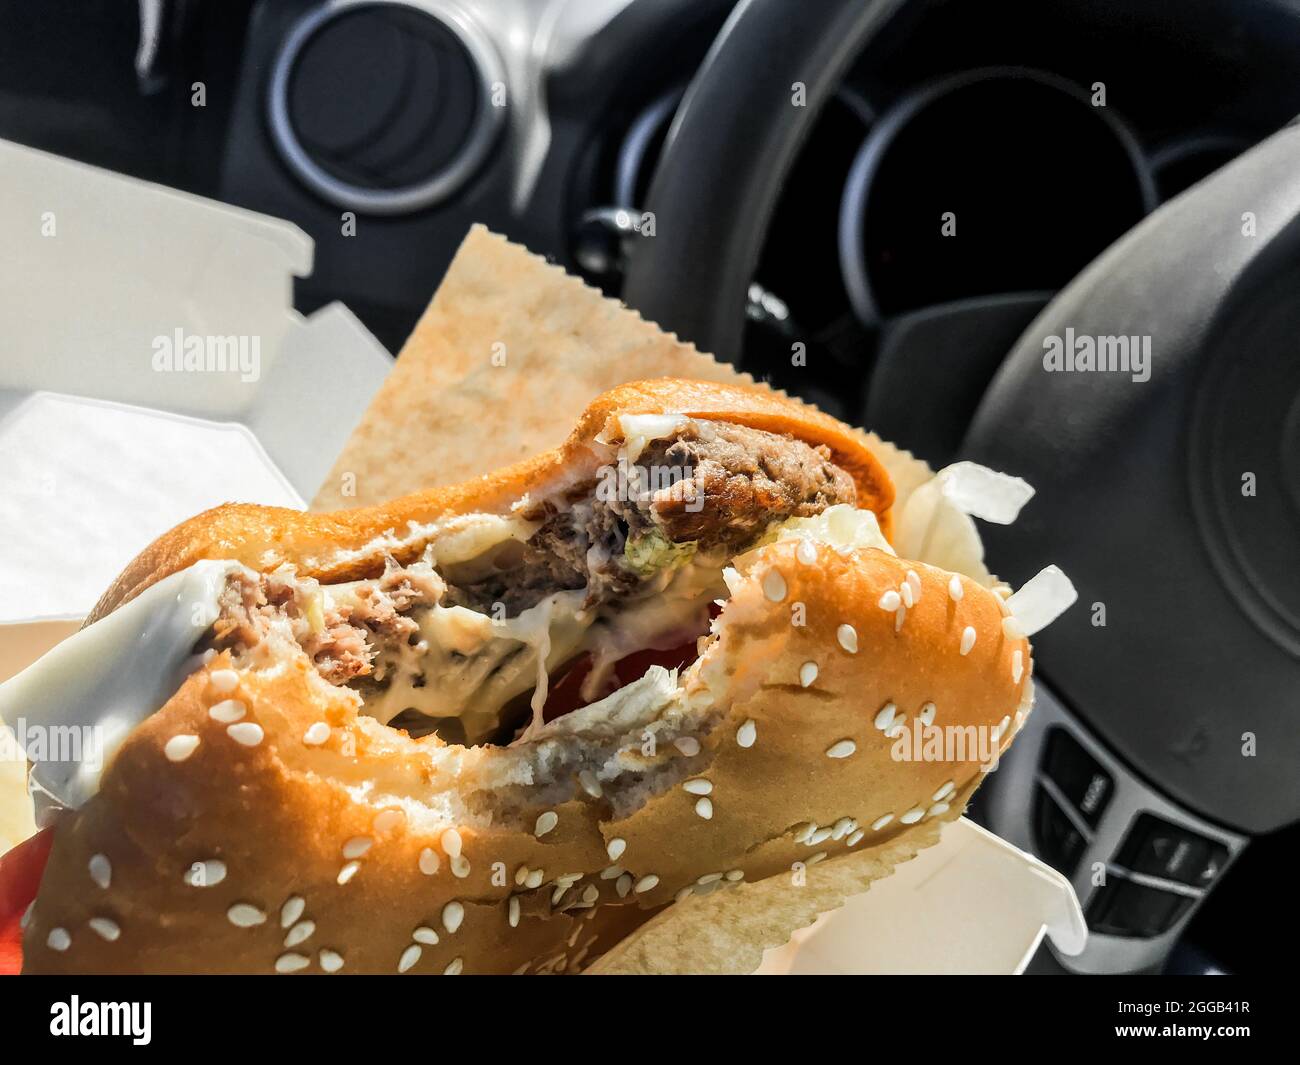 Essen während der Fahrt: Ein gebissene Burger in den Händen des Fahrers im Auto vor dem Hintergrund des Lenkrads. Stockfoto